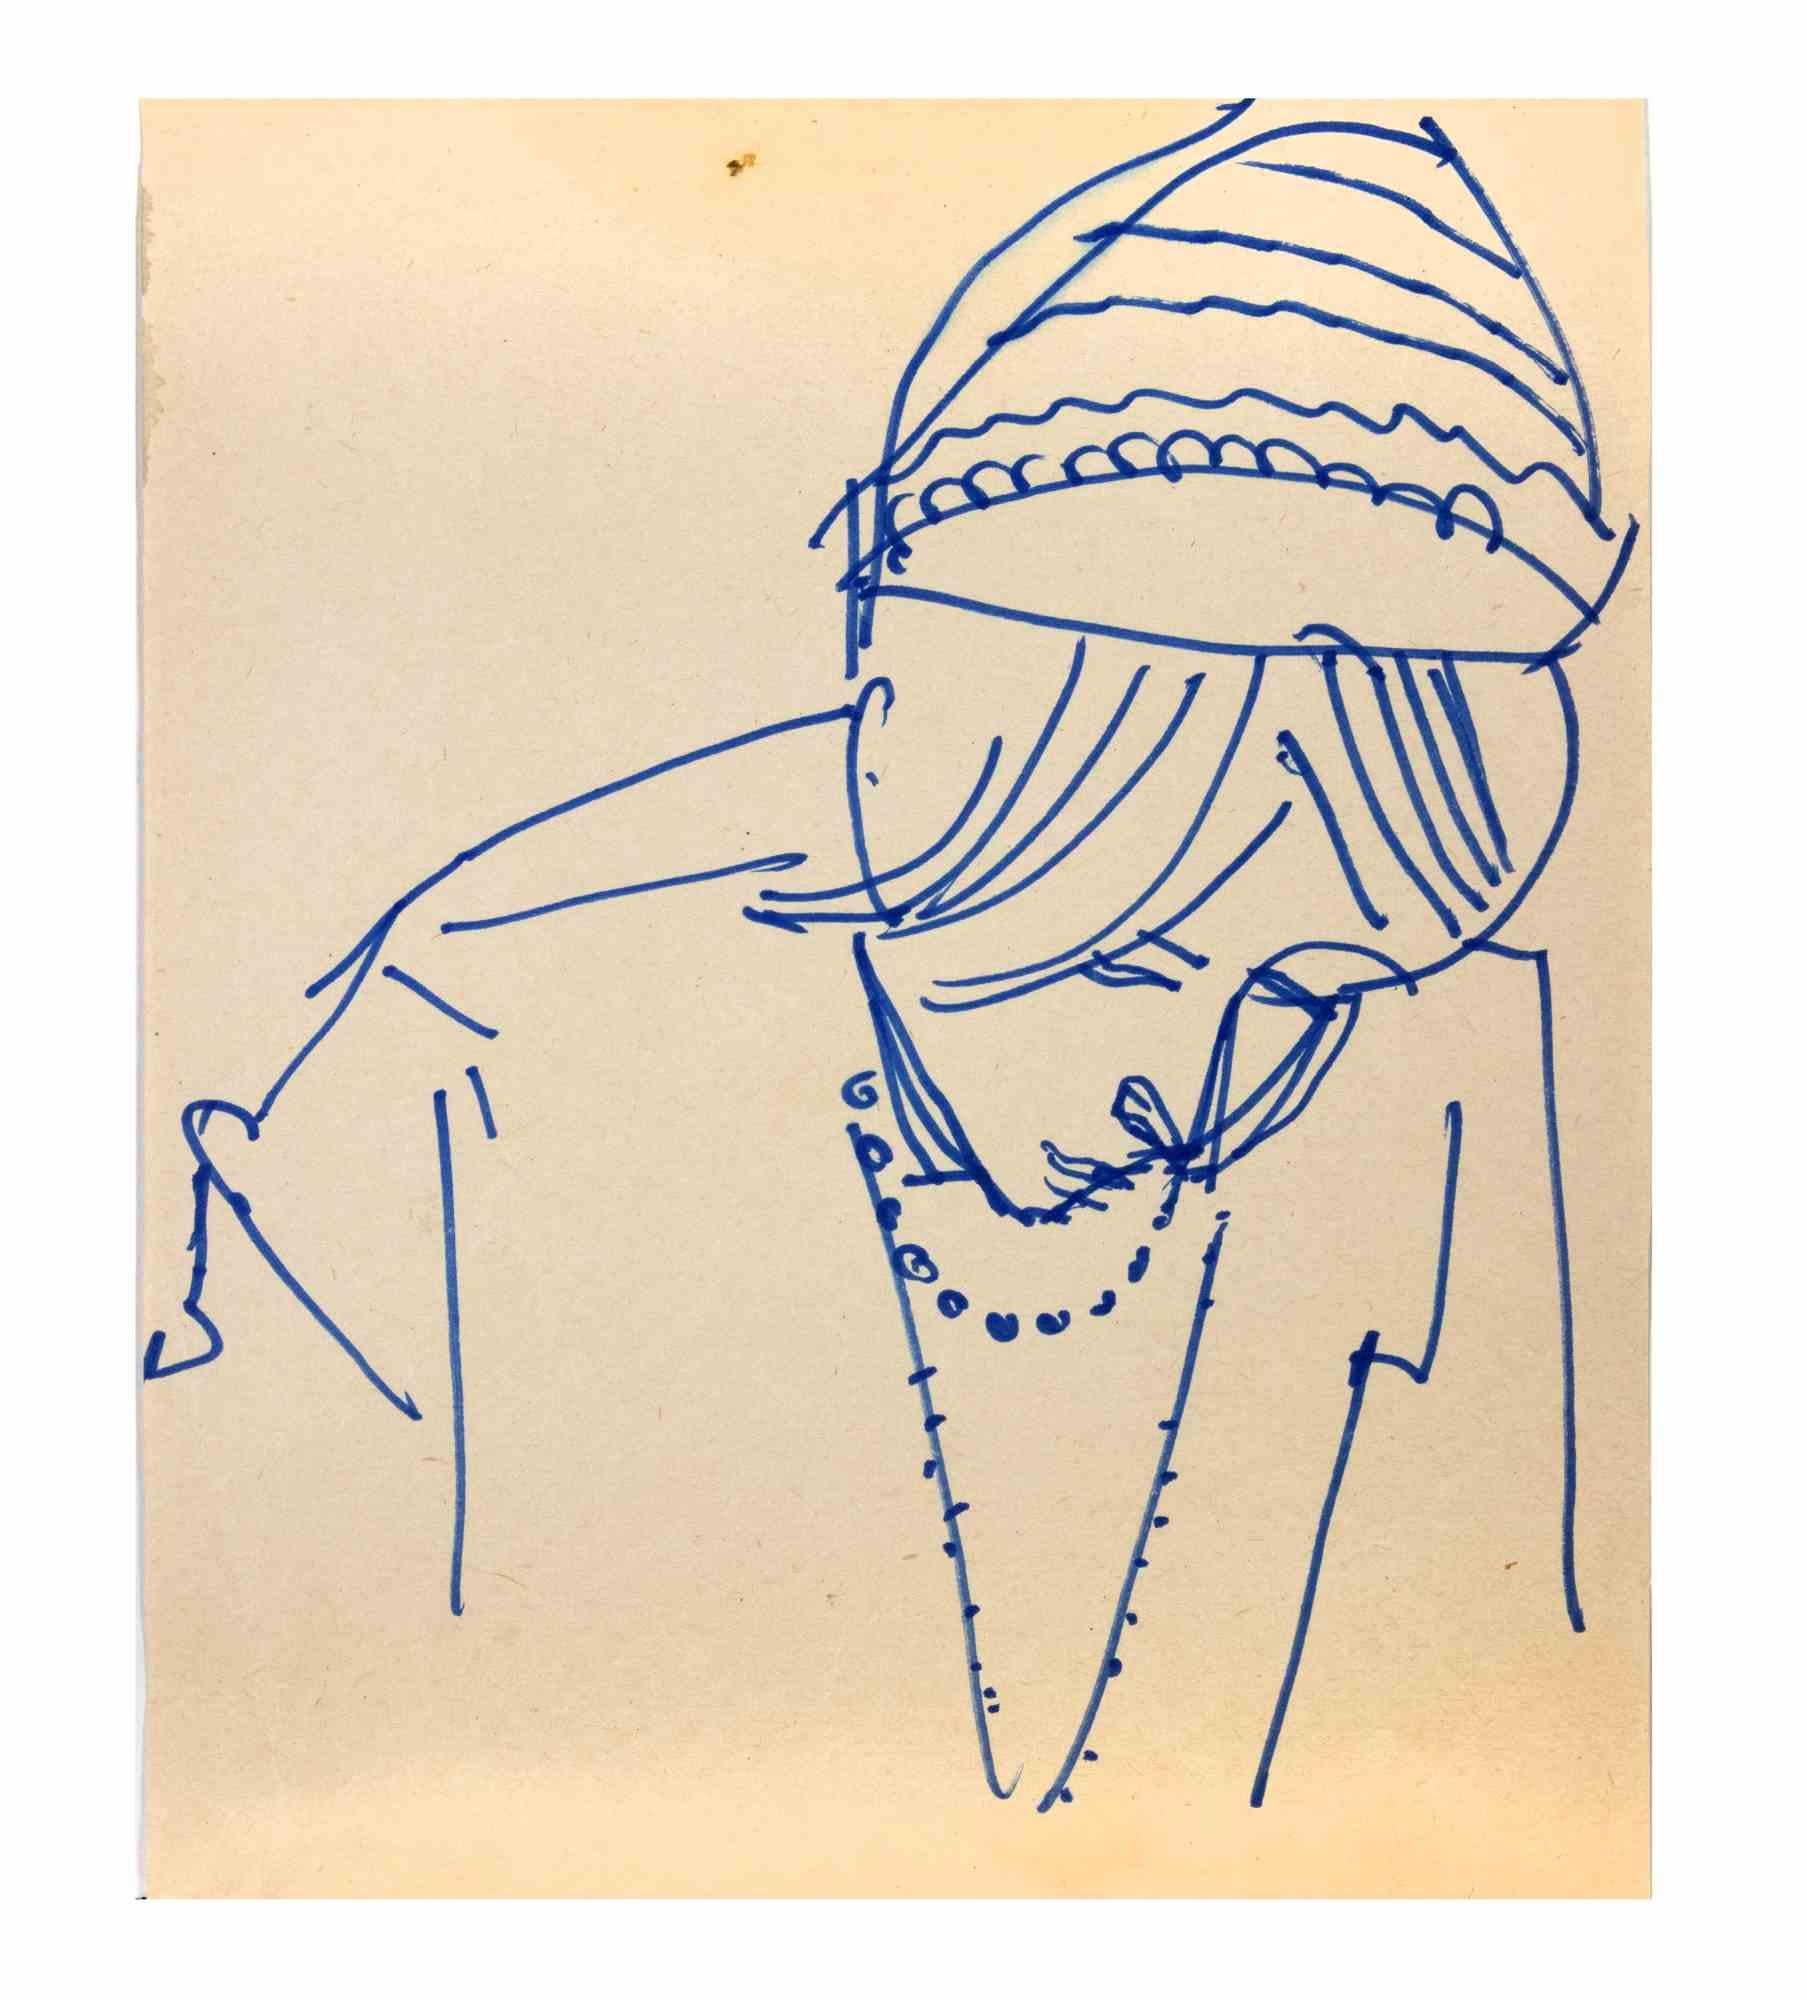 Porträt einer Frau ist eine blaue Marker-Zeichnung realisiert von  Reynold Arnould  (Le Havre 1919 - Paris 1980).

Guter Zustand auf einem vergilbten kleinen Blatt.

Keine Unterschrift.

Reynold Arnould wurde 1919 in Le Havre, Frankreich, geboren.